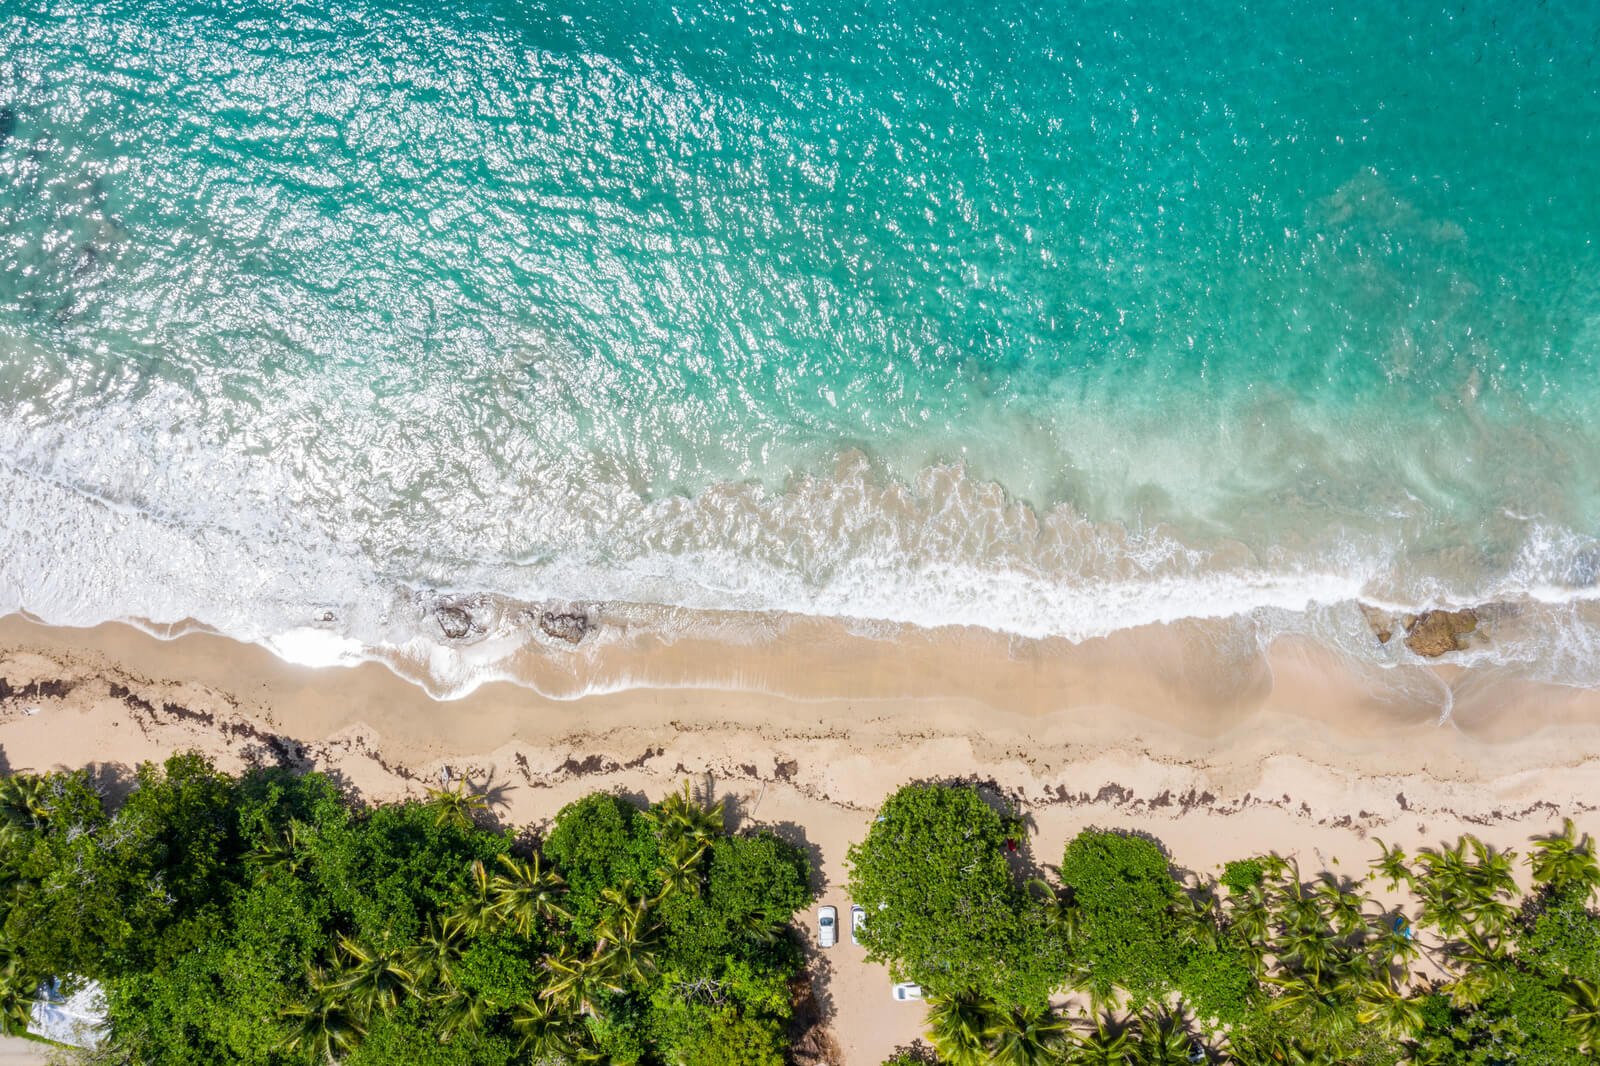 An ariel shot of a Costa Rica beach